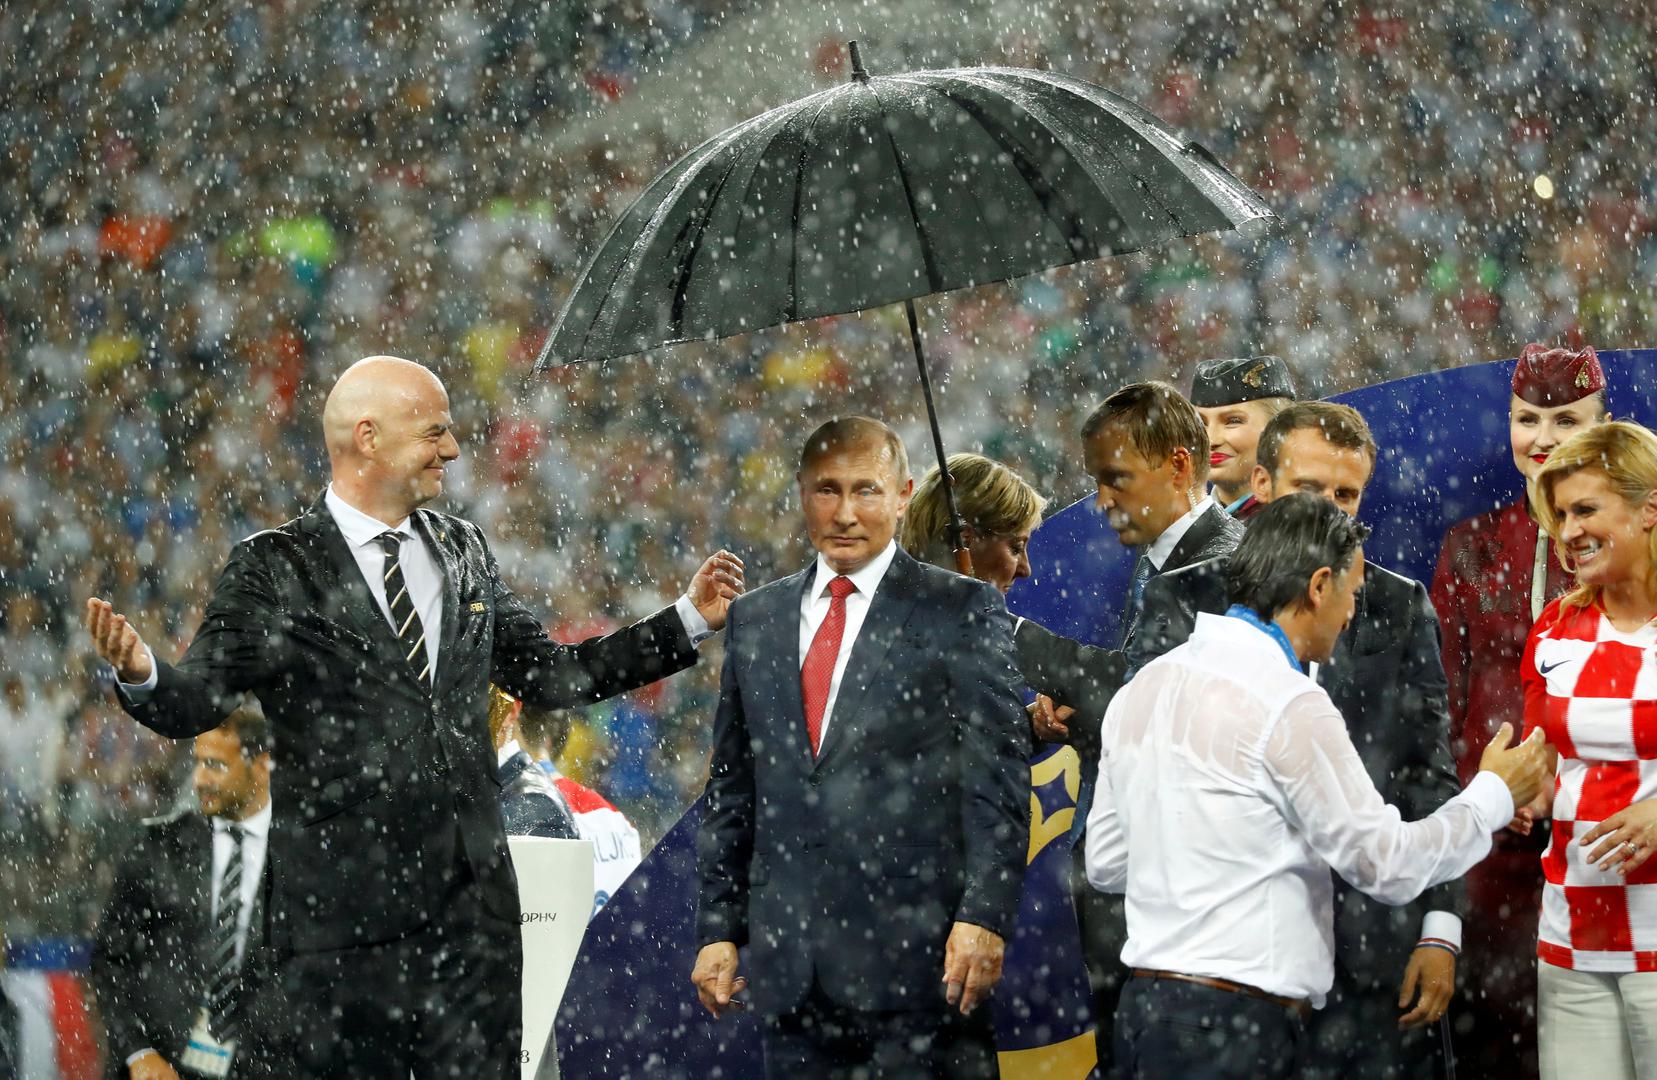 Oni su odlučili Putinu darovati deset takvih kišobrana kako bi se ubuduće izbjegle situacije kao ova s dodjele medalja na SP-u.

